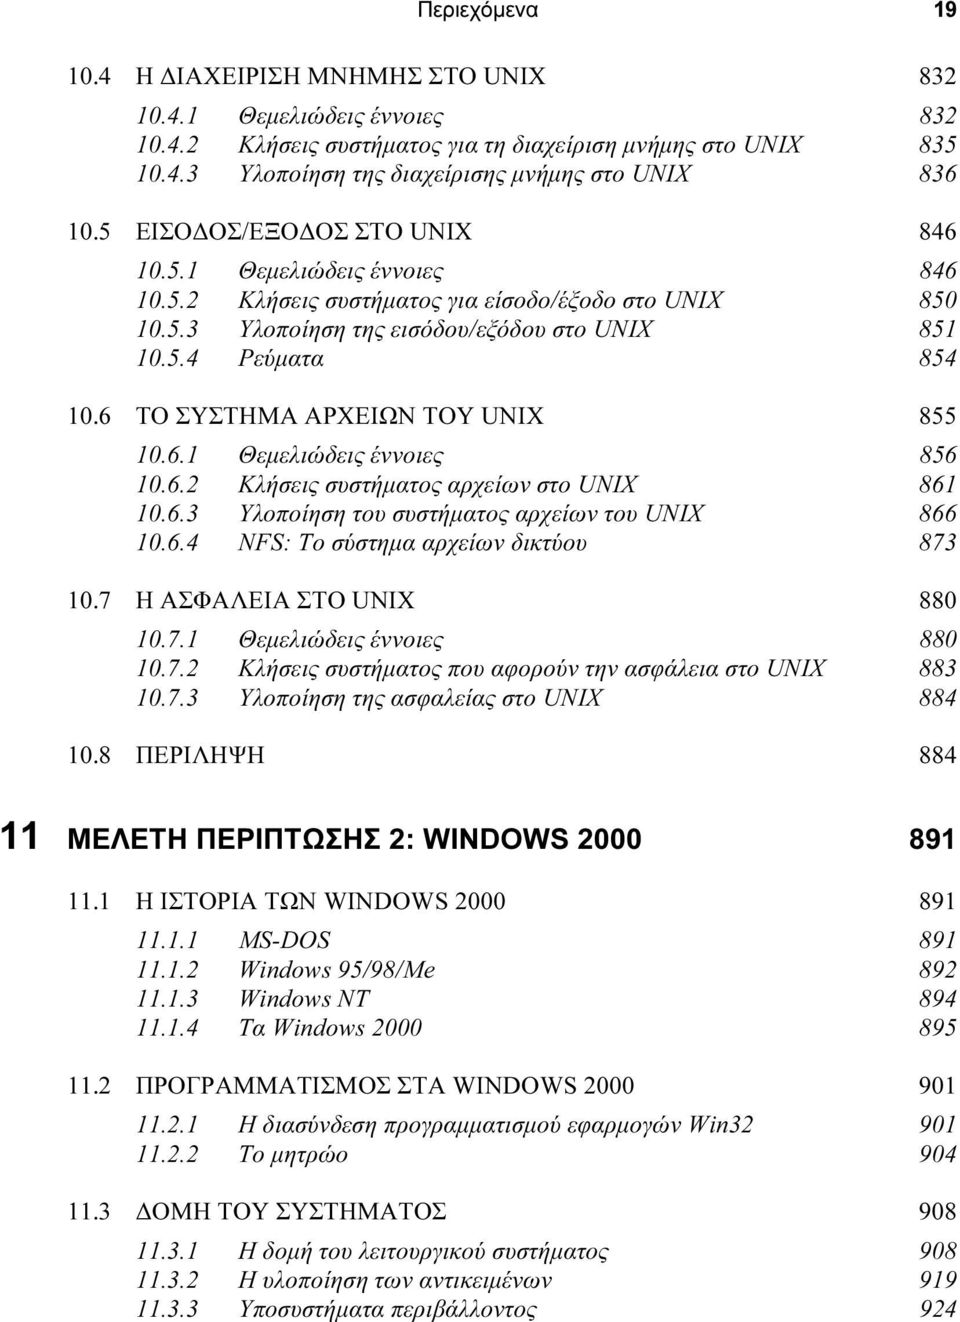 6 ΤΟ ΣΥΣΤΗΜΑ ΑΡΧΕΙΩΝ ΤΟΥ UNIX 855 10.6.1 Θεµελιώδεις έννοιες 856 10.6.2 Κλήσεις συστήµατος αρχείων στο UNIX 861 10.6.3 Υλοποίηση του συστήµατος αρχείων του UNIX 866 10.6.4 NFS: Το σύστηµα αρχείων δικτύου 873 10.